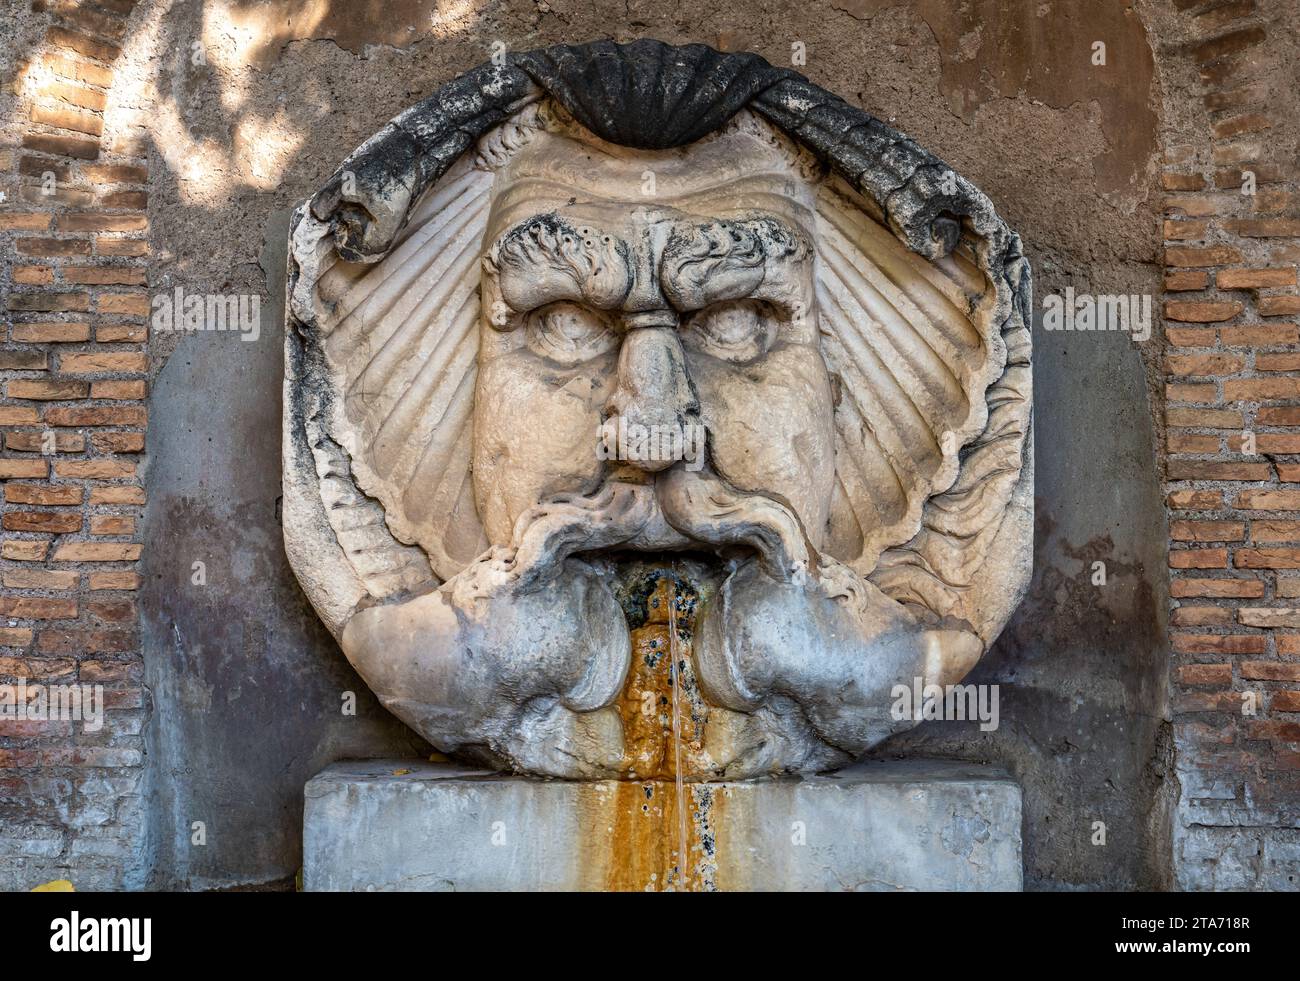 Nahaufnahme eines antiken römischen Brunnens aus Marmor, der das Gesicht eines wütenden und haarigen Gottes darstellt Stockfoto